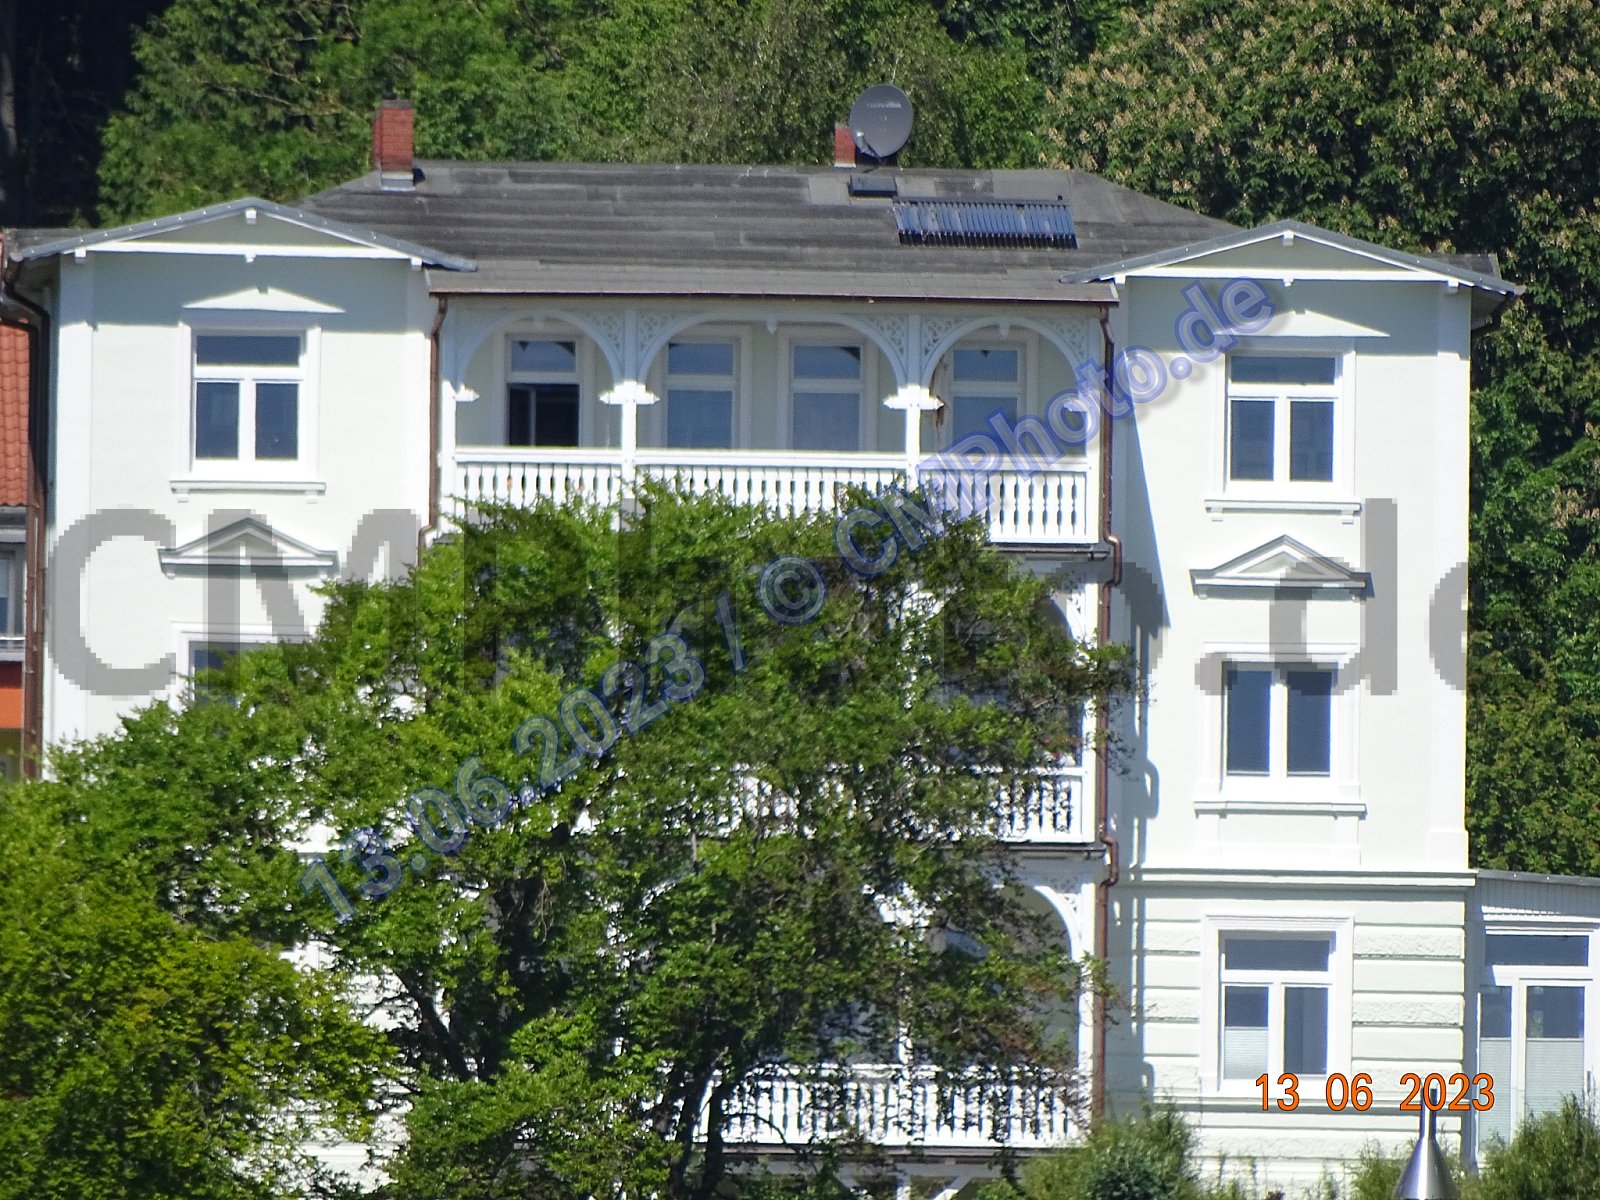 2023 - Juni - Kreidefelsen-Koenigsstuhl